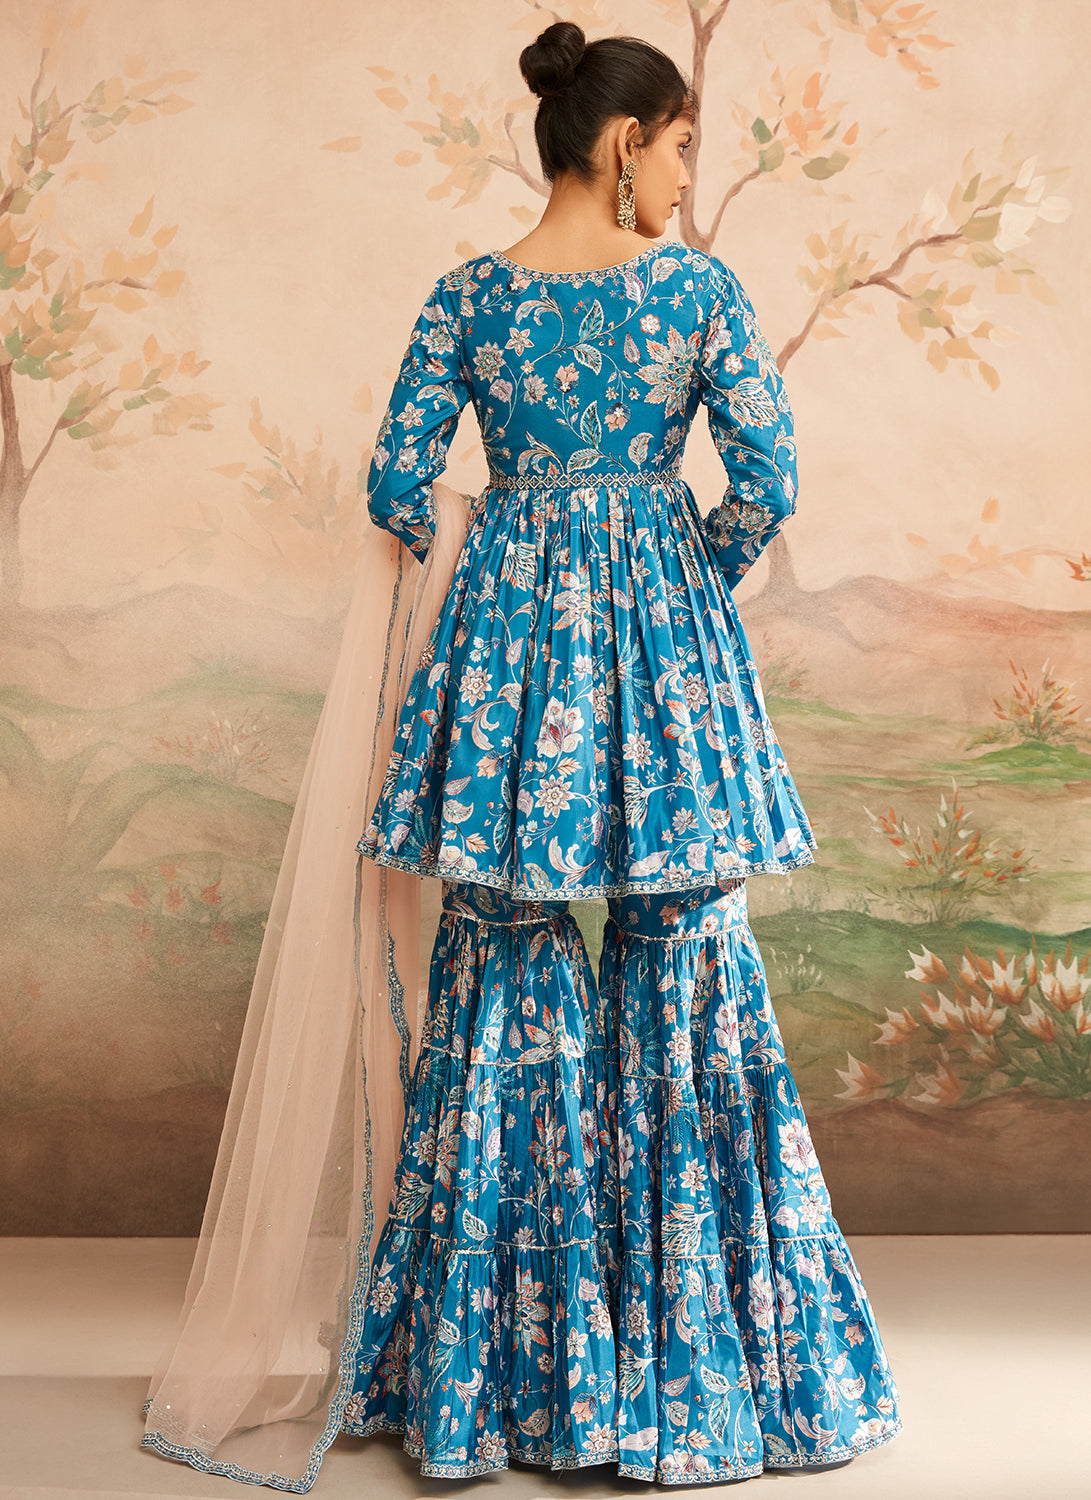 Teal Blue Floral Printed Gharara Suit